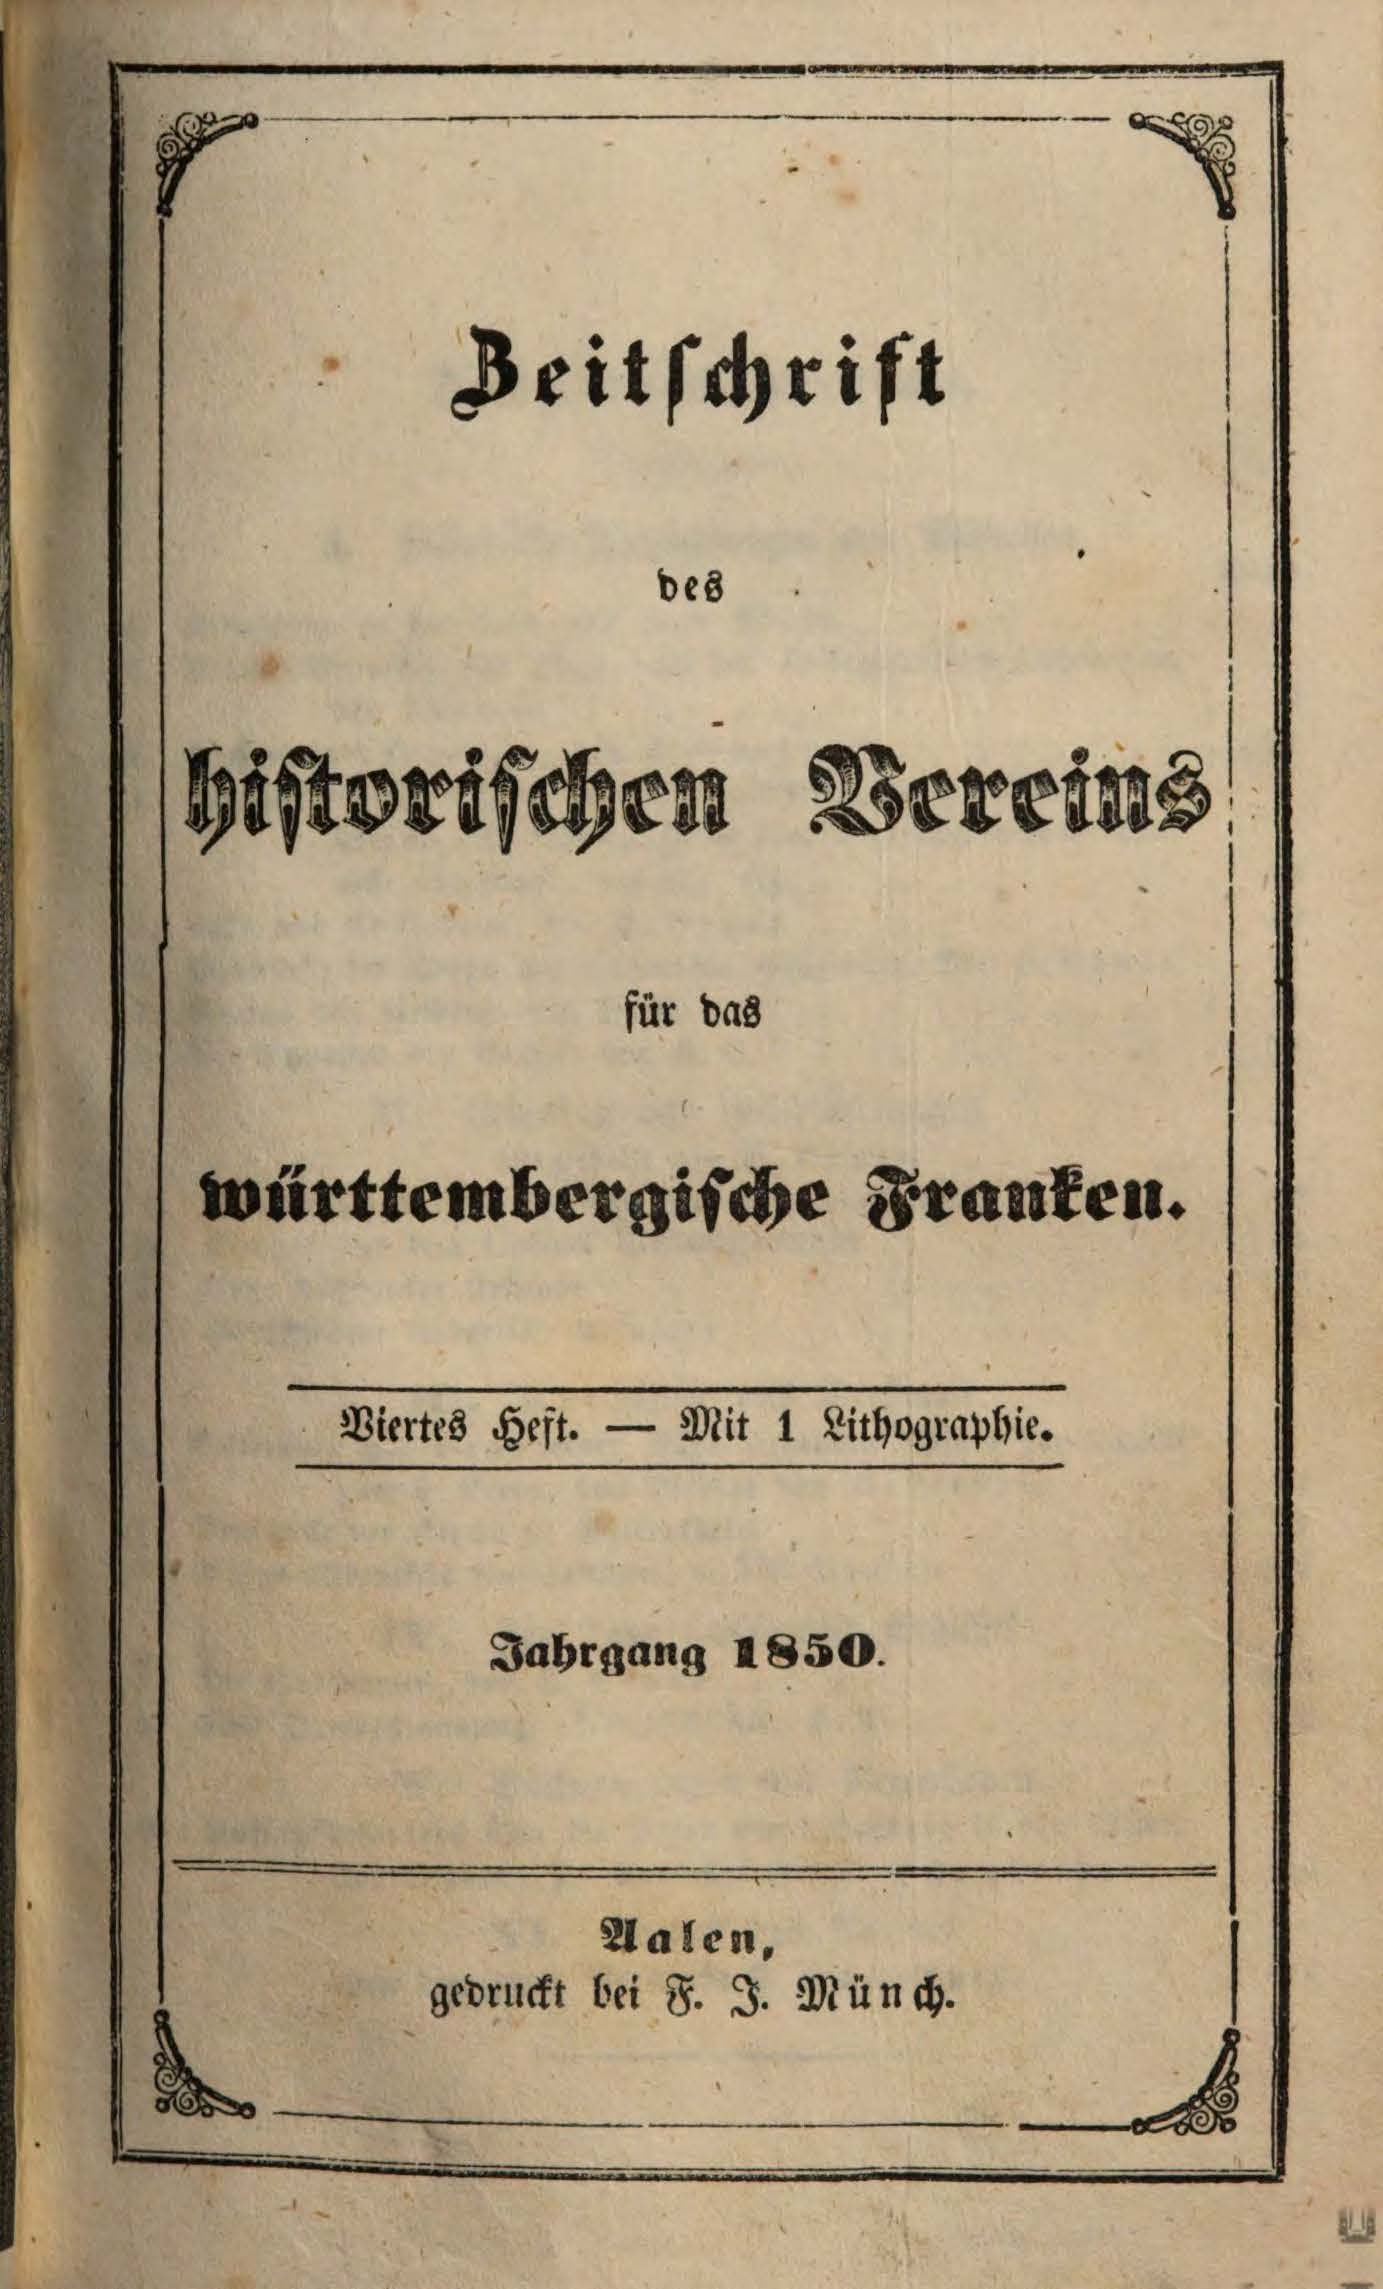                     Ansehen Bd. 2 Nr. 4 (1850): Zeitschrift des Historischen Vereins für das Württembergische Franken
                